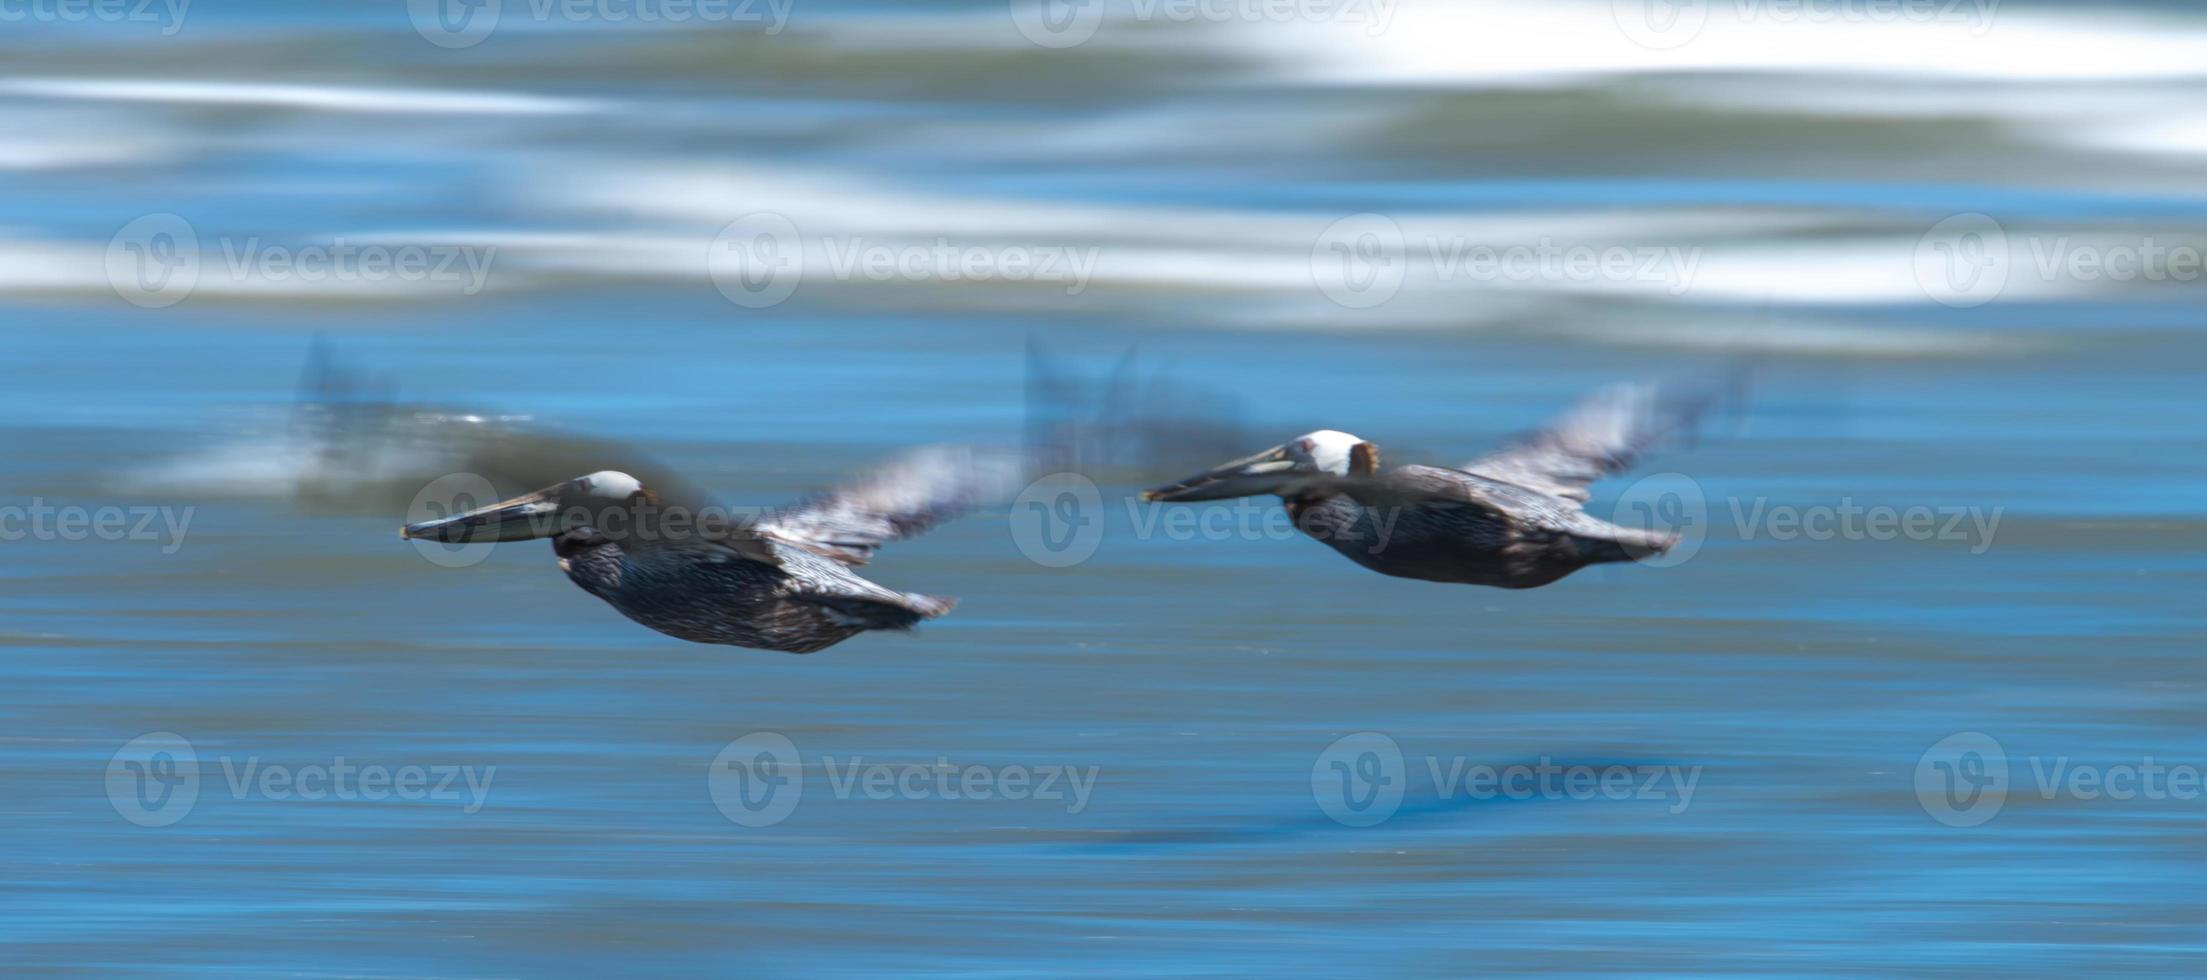 pellicani astratti in volo sulla spiaggia dell'oceano atlantico foto